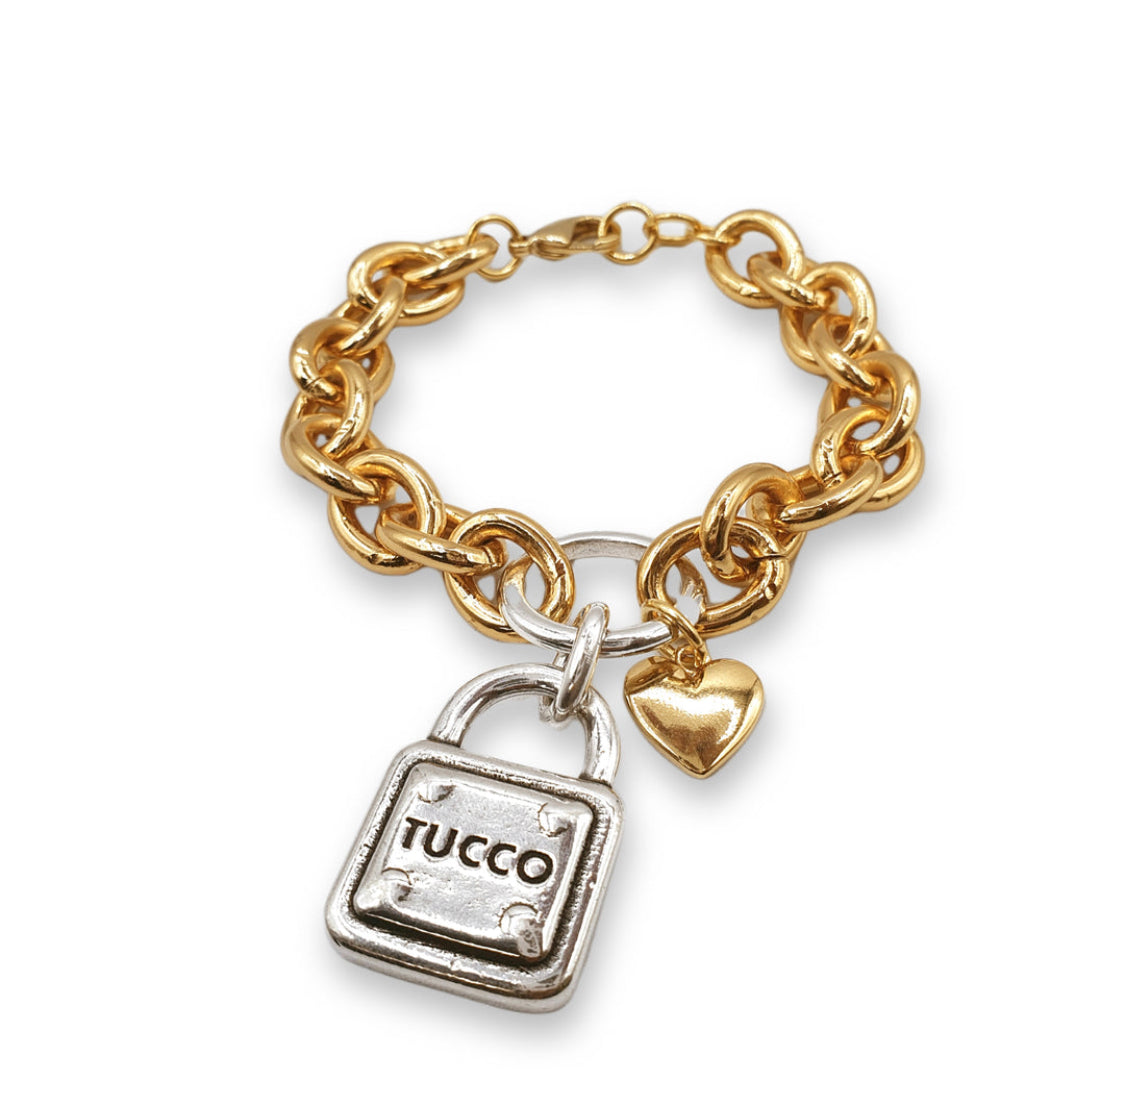 Tucco- Colección Closed